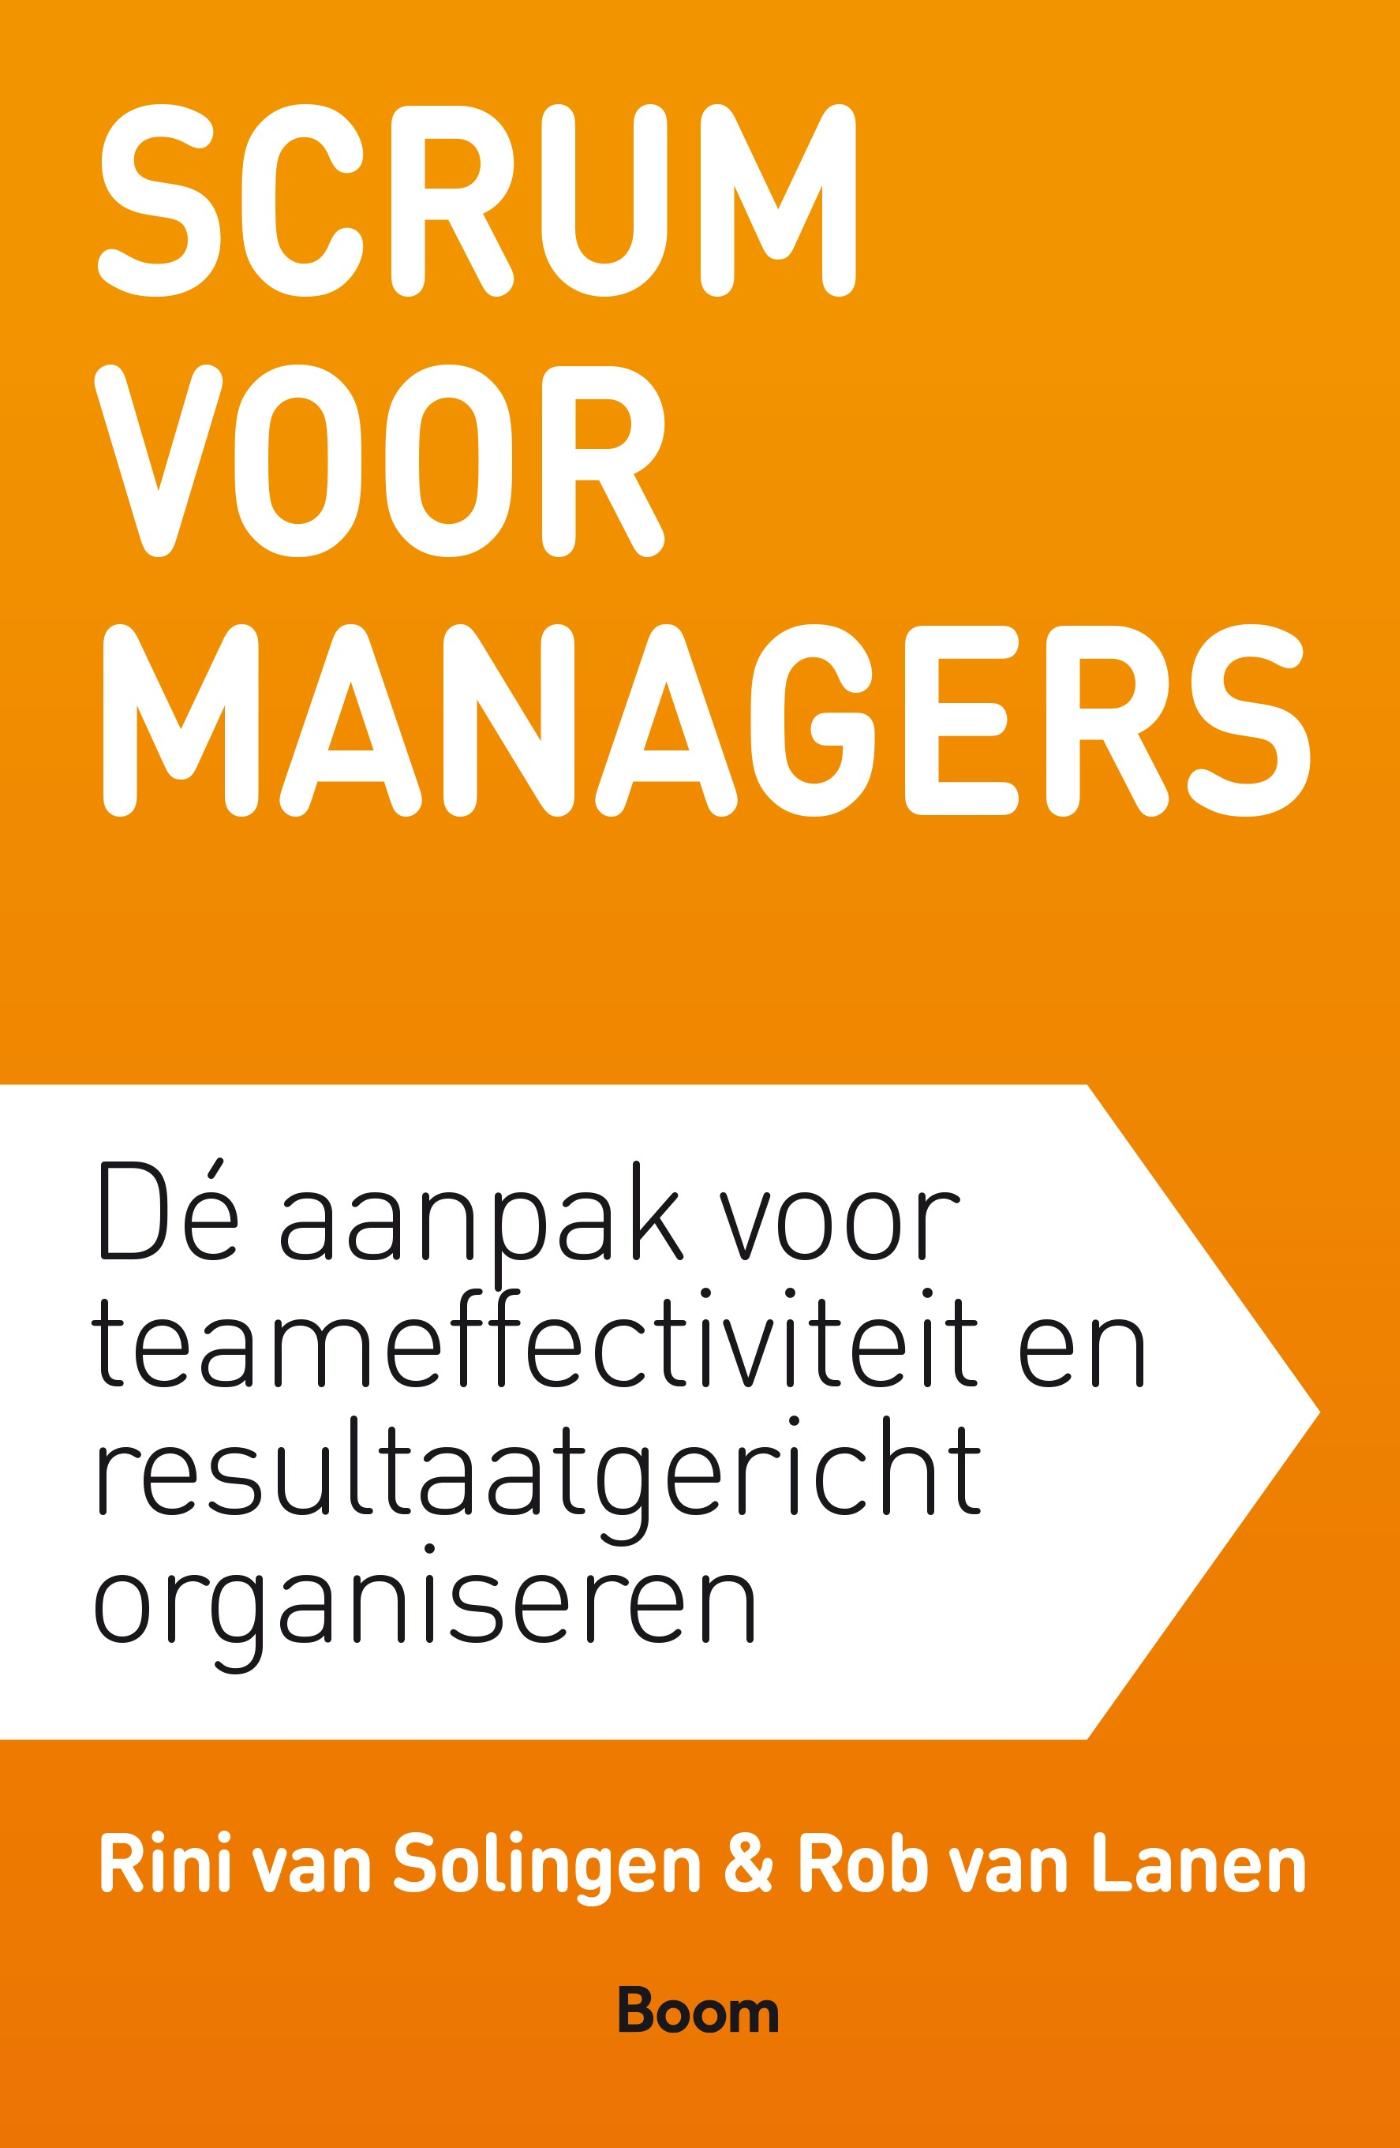 Scrum voor managers (Ebook)